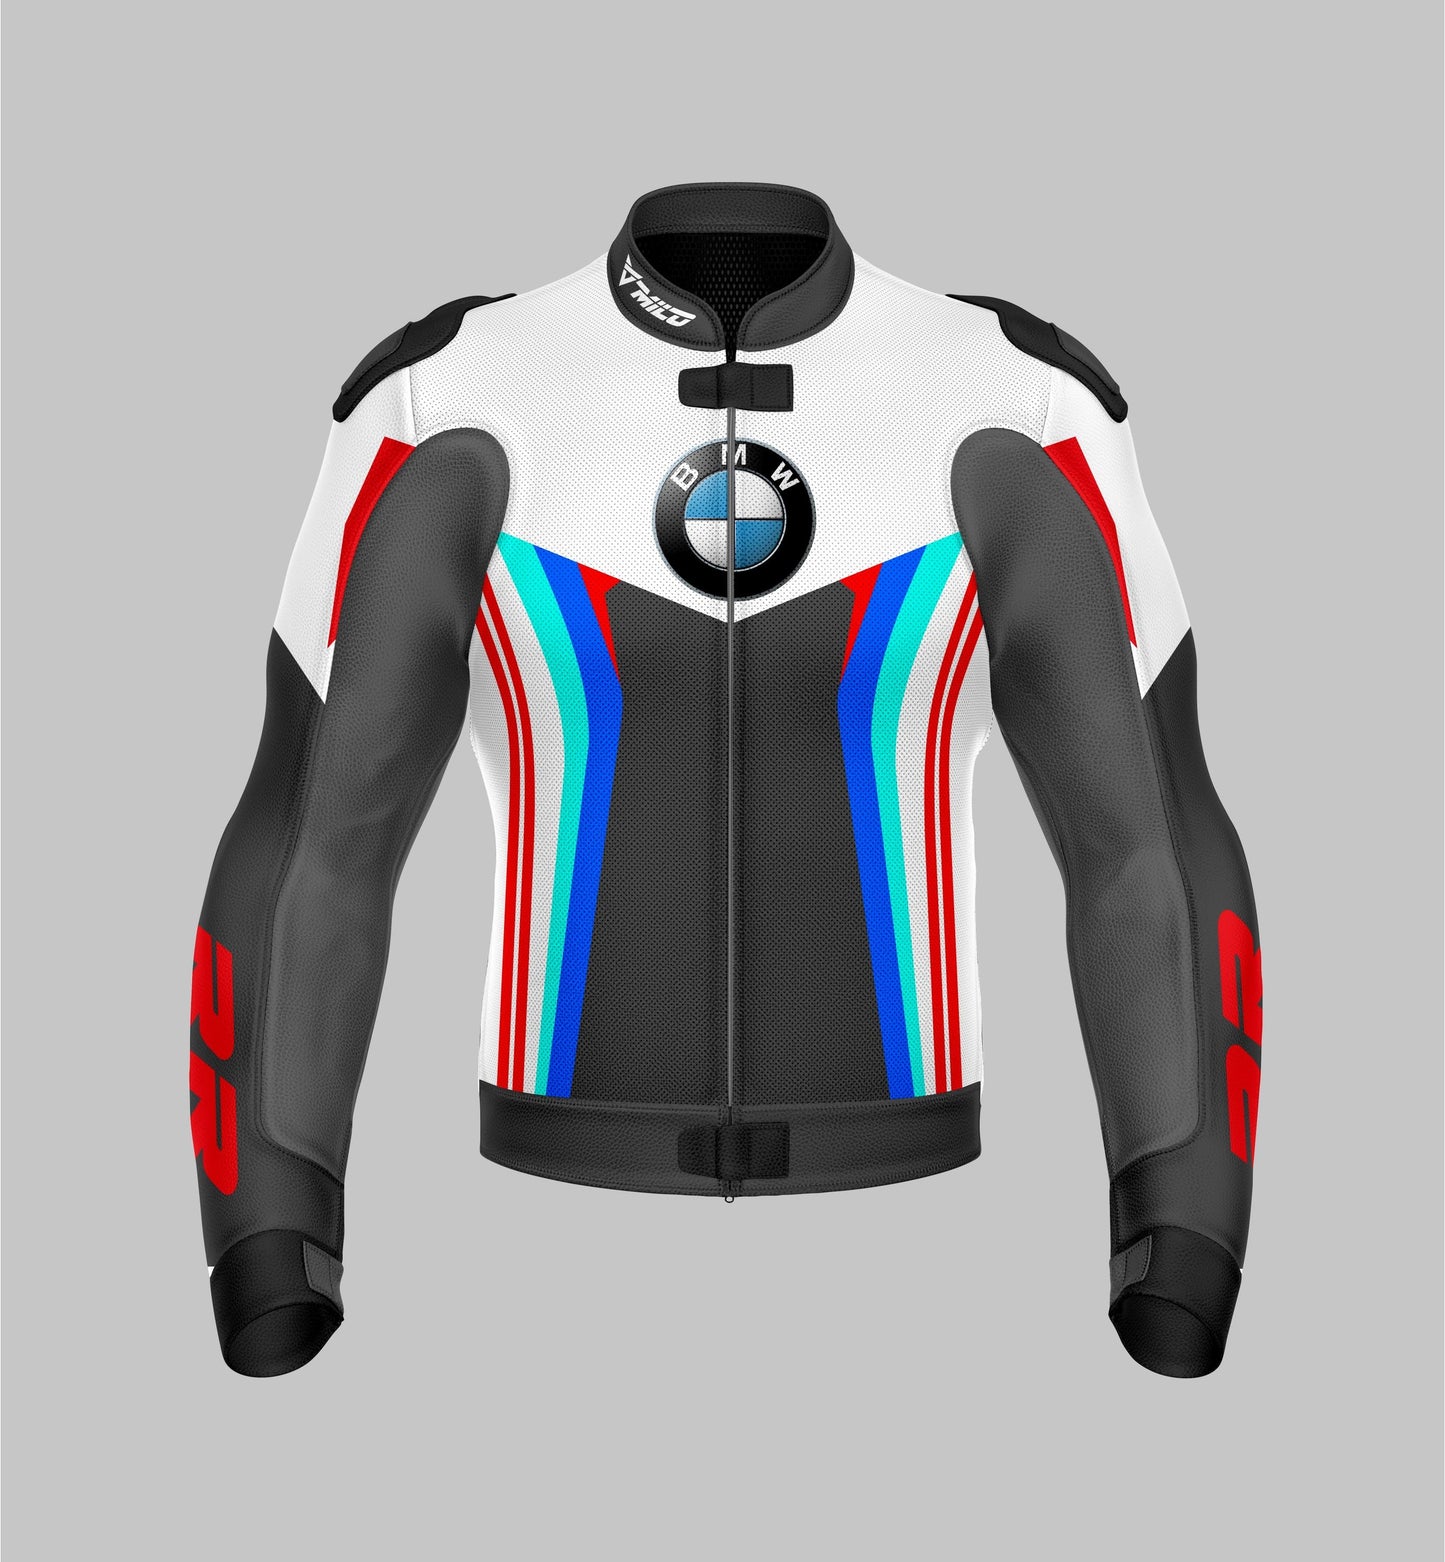 BMW Leather Racing Jacket